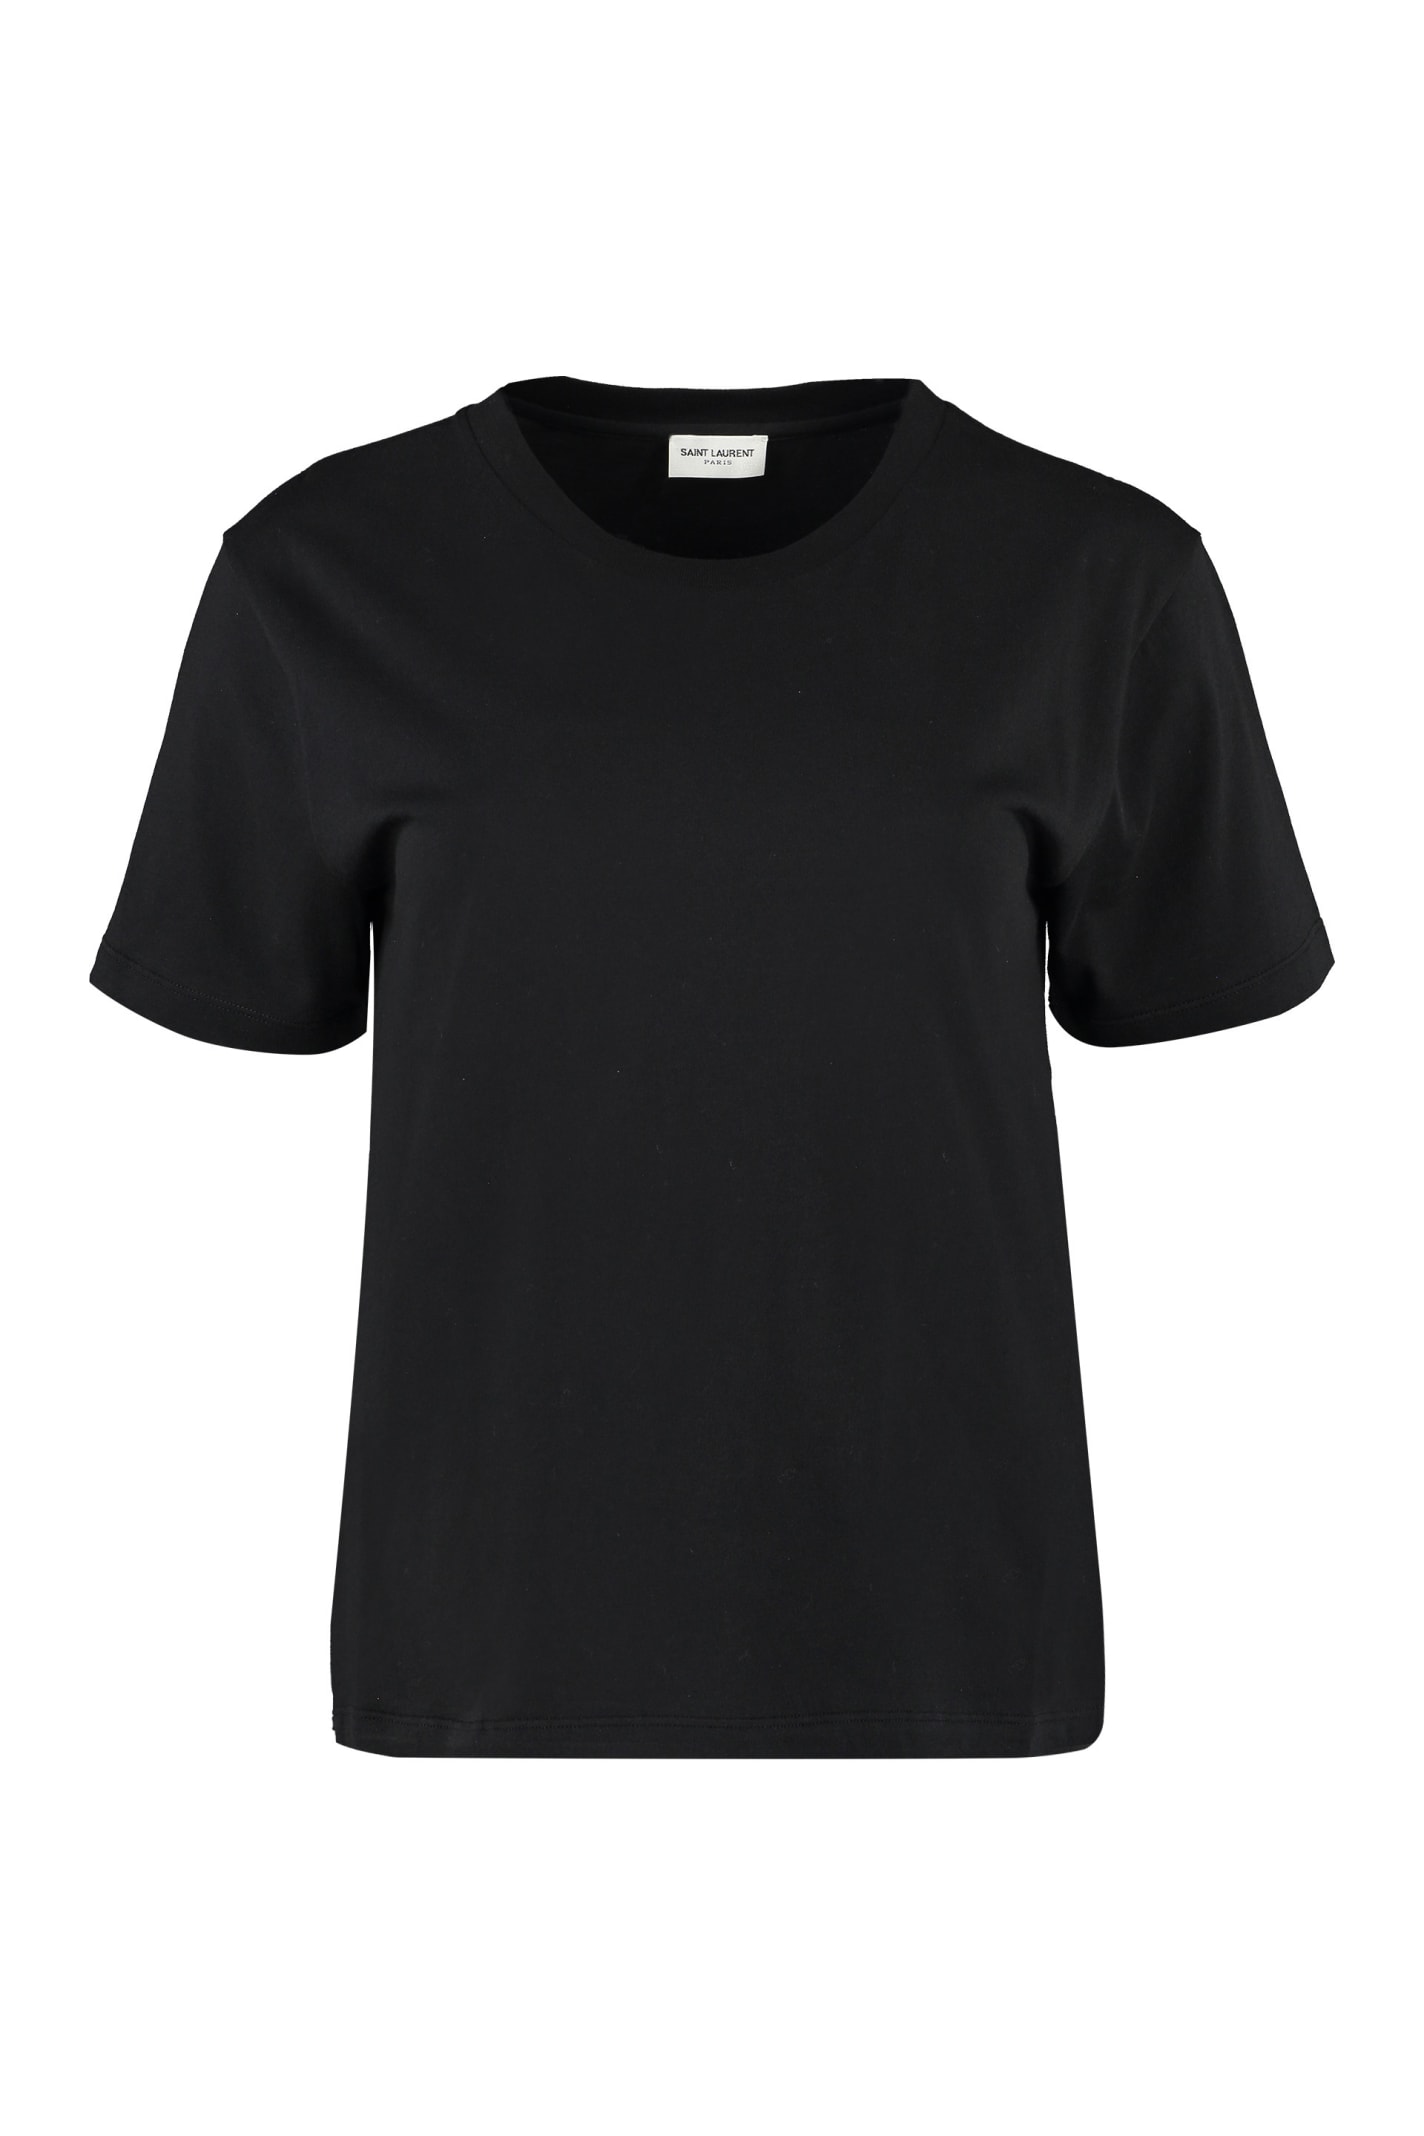 Saint Laurent Cotton Crew-neck T-shirt